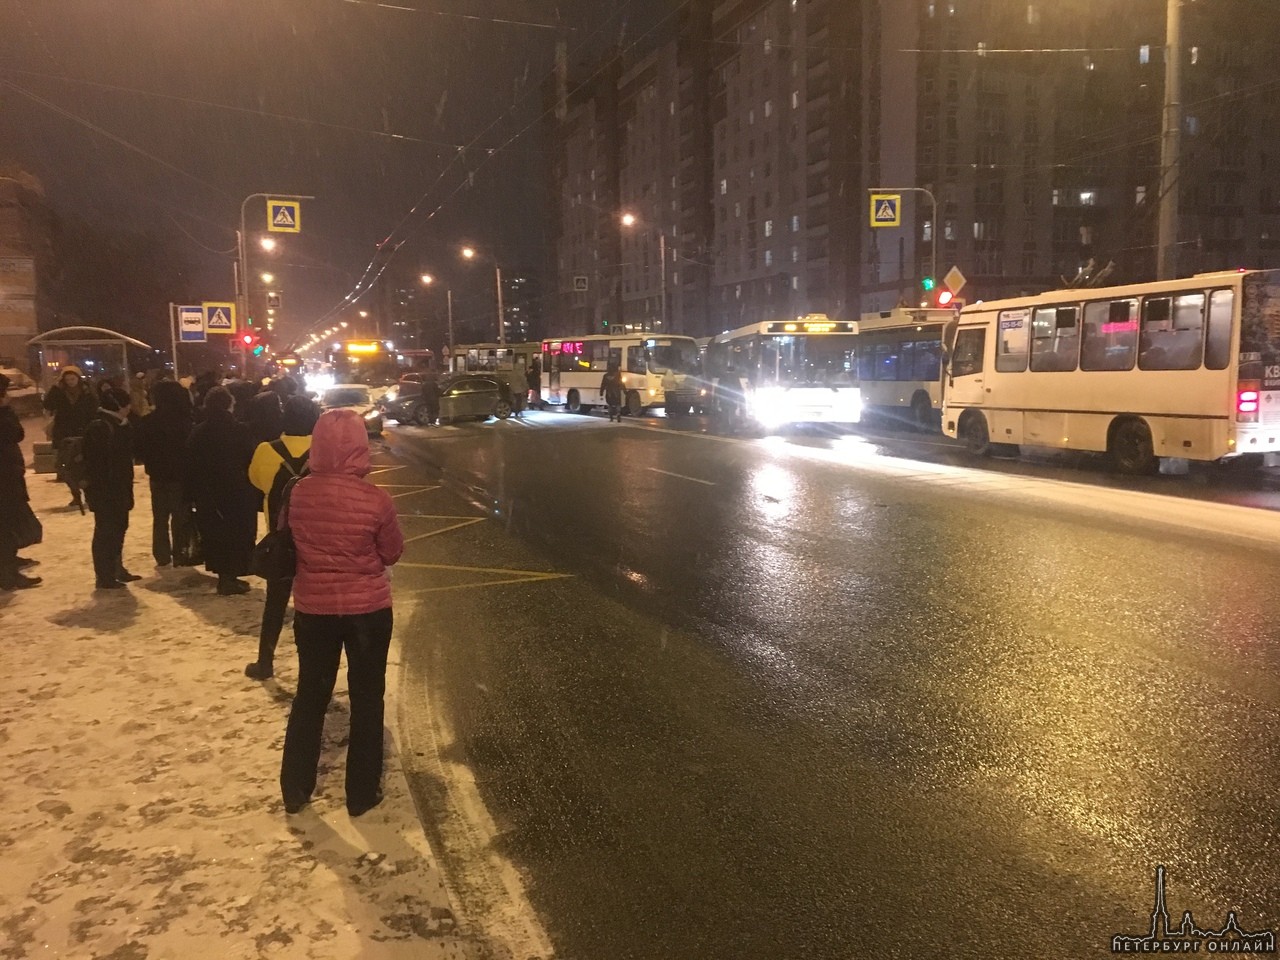 Авария на проспекте Ветеранов у ТЦ "Ульянка" и все участники в кадре.. Автобус перекрыл оставшийся п...